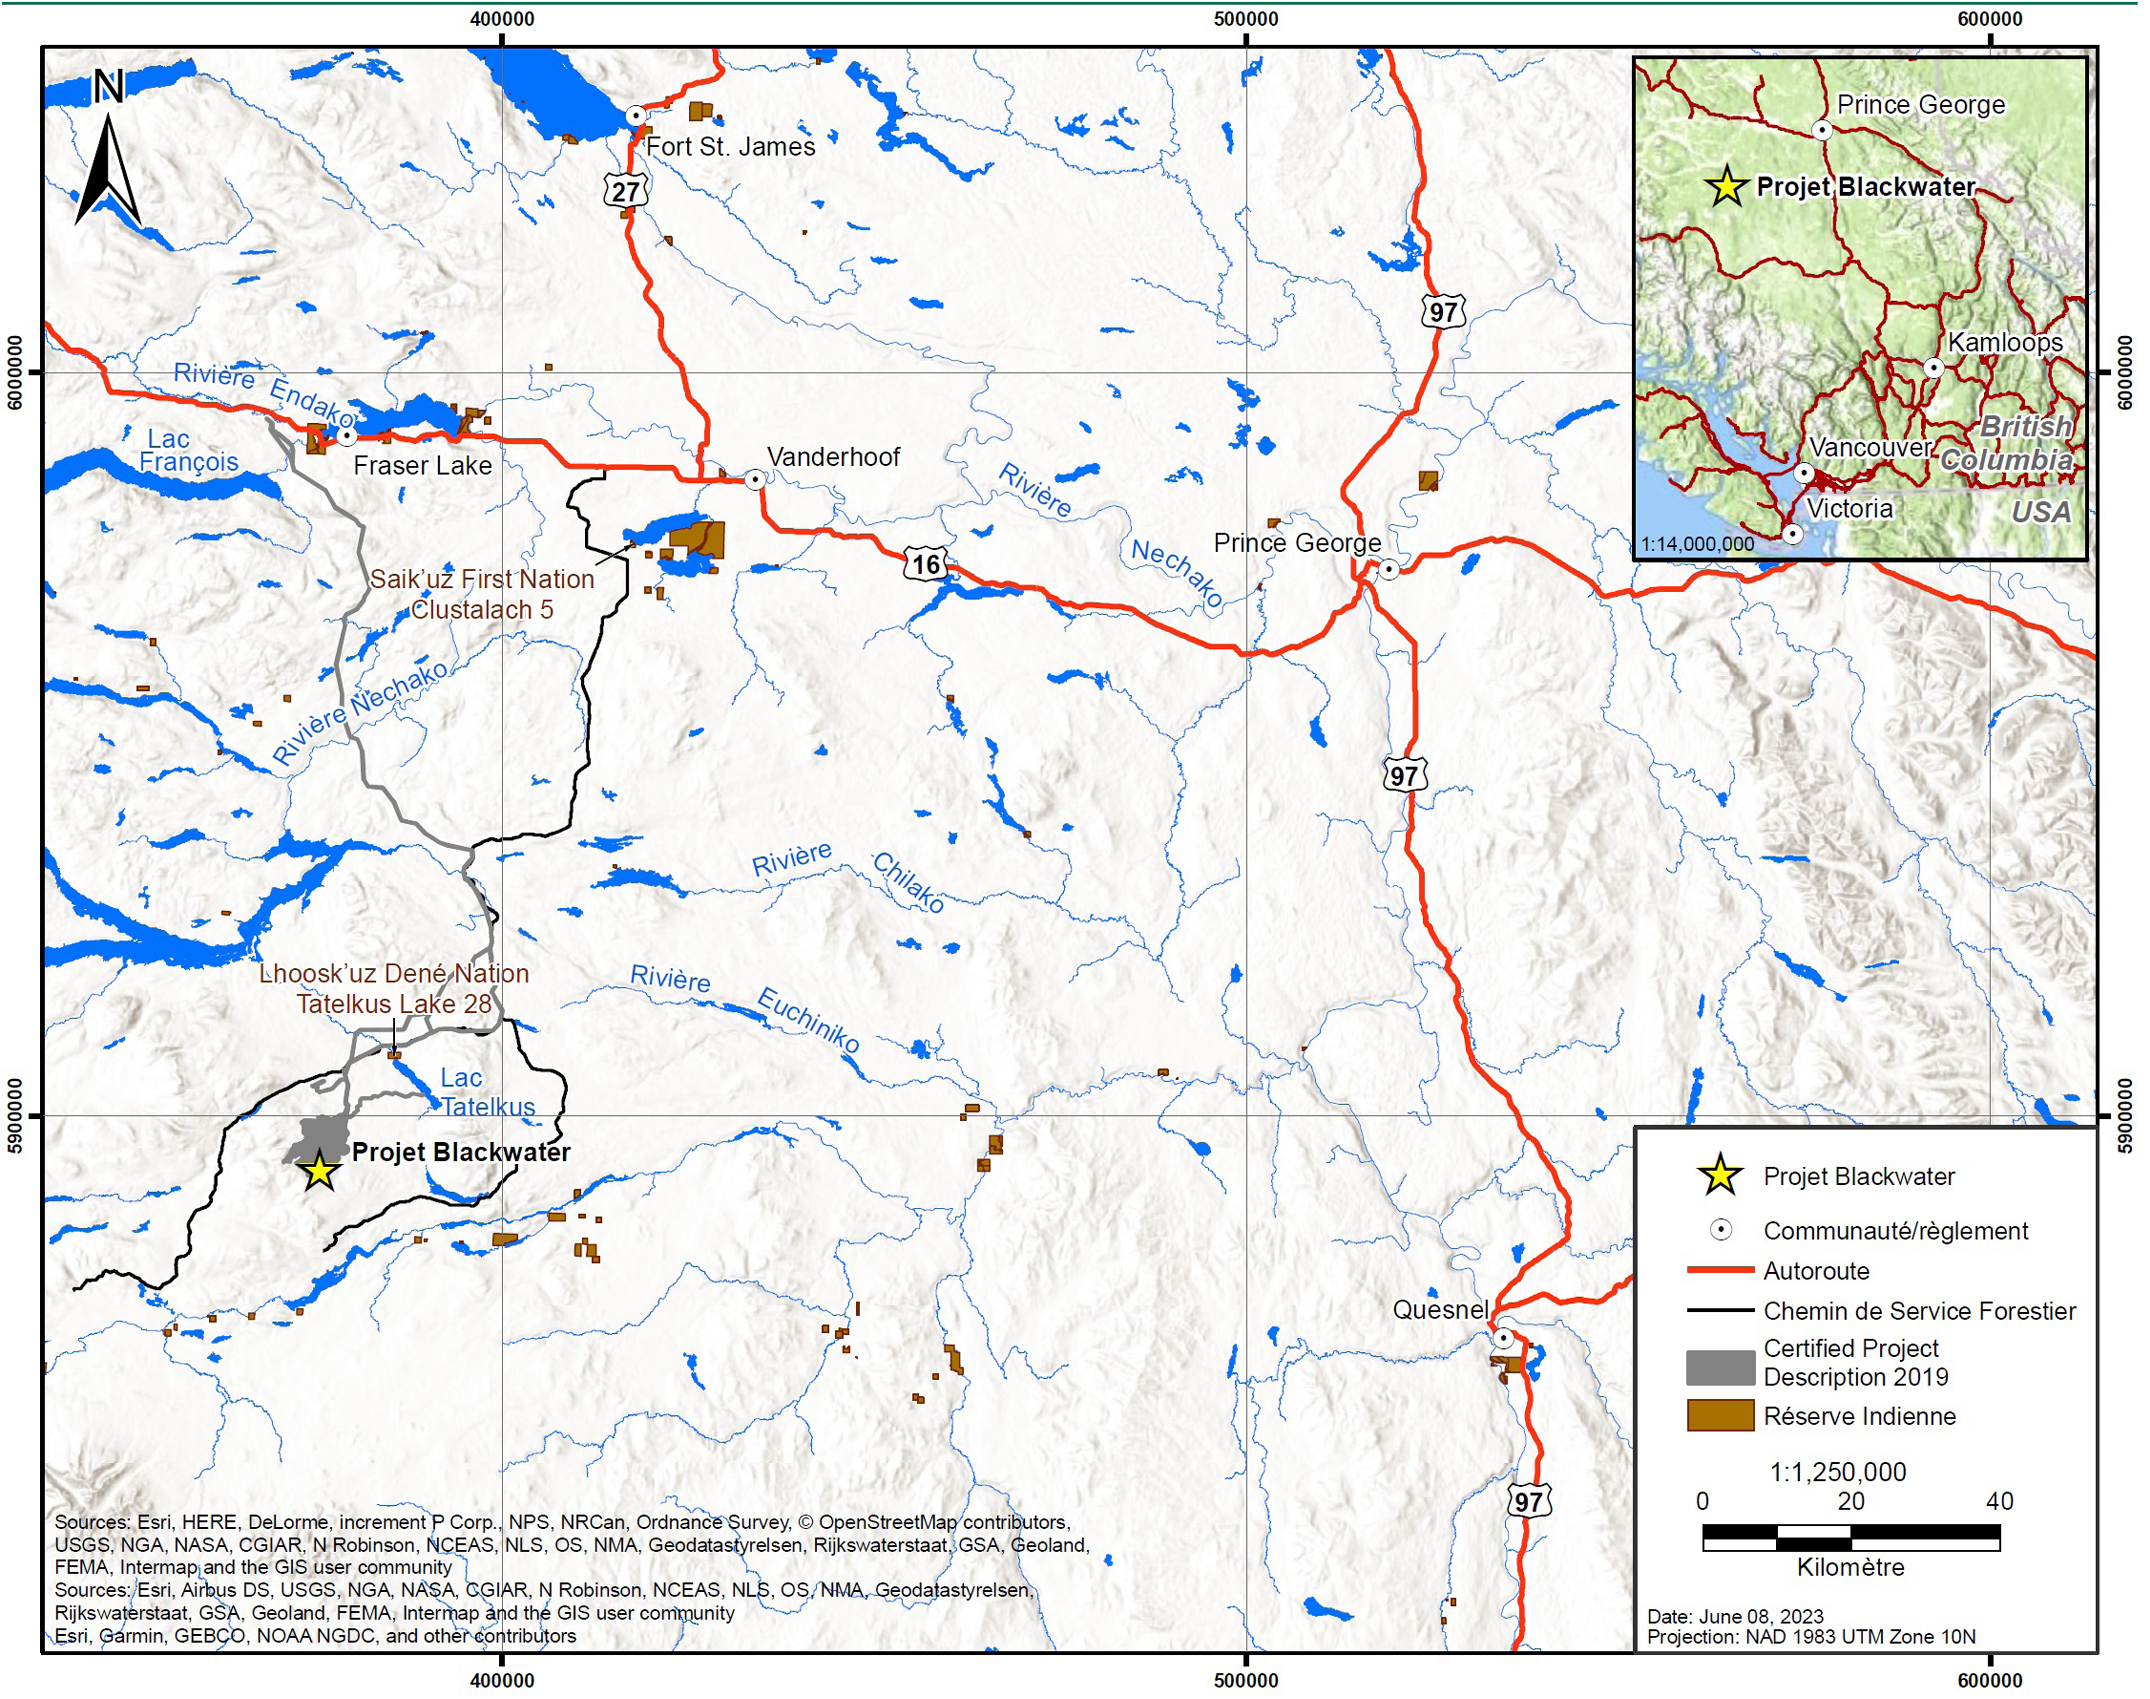 Carte à l’échelle 1/1 250 000 montrant l’emplacement général du projet de mine d’or Blackwater en Colombie-Britannique – Version textuelle en dessous de l'image